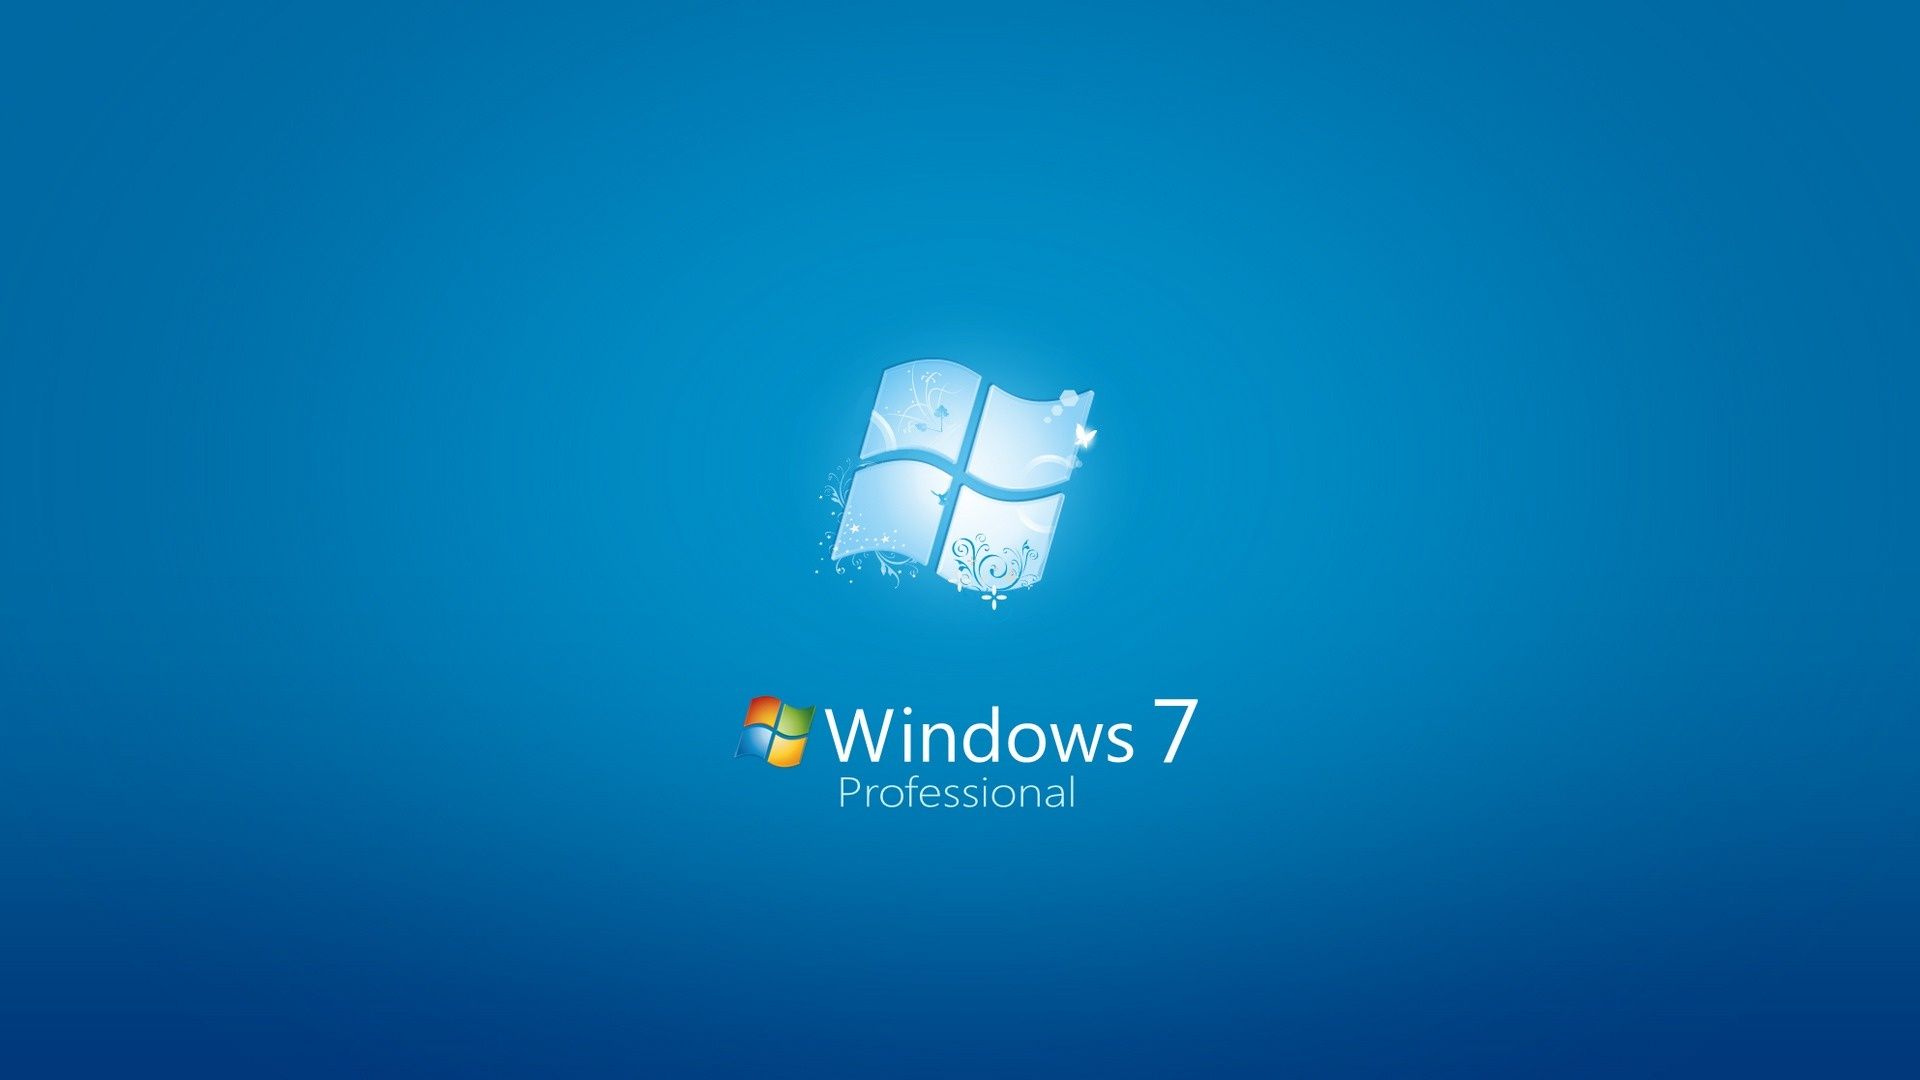 Windows 7 Desktop Wallpaper Widescreen 9915 Wallpaper Cool